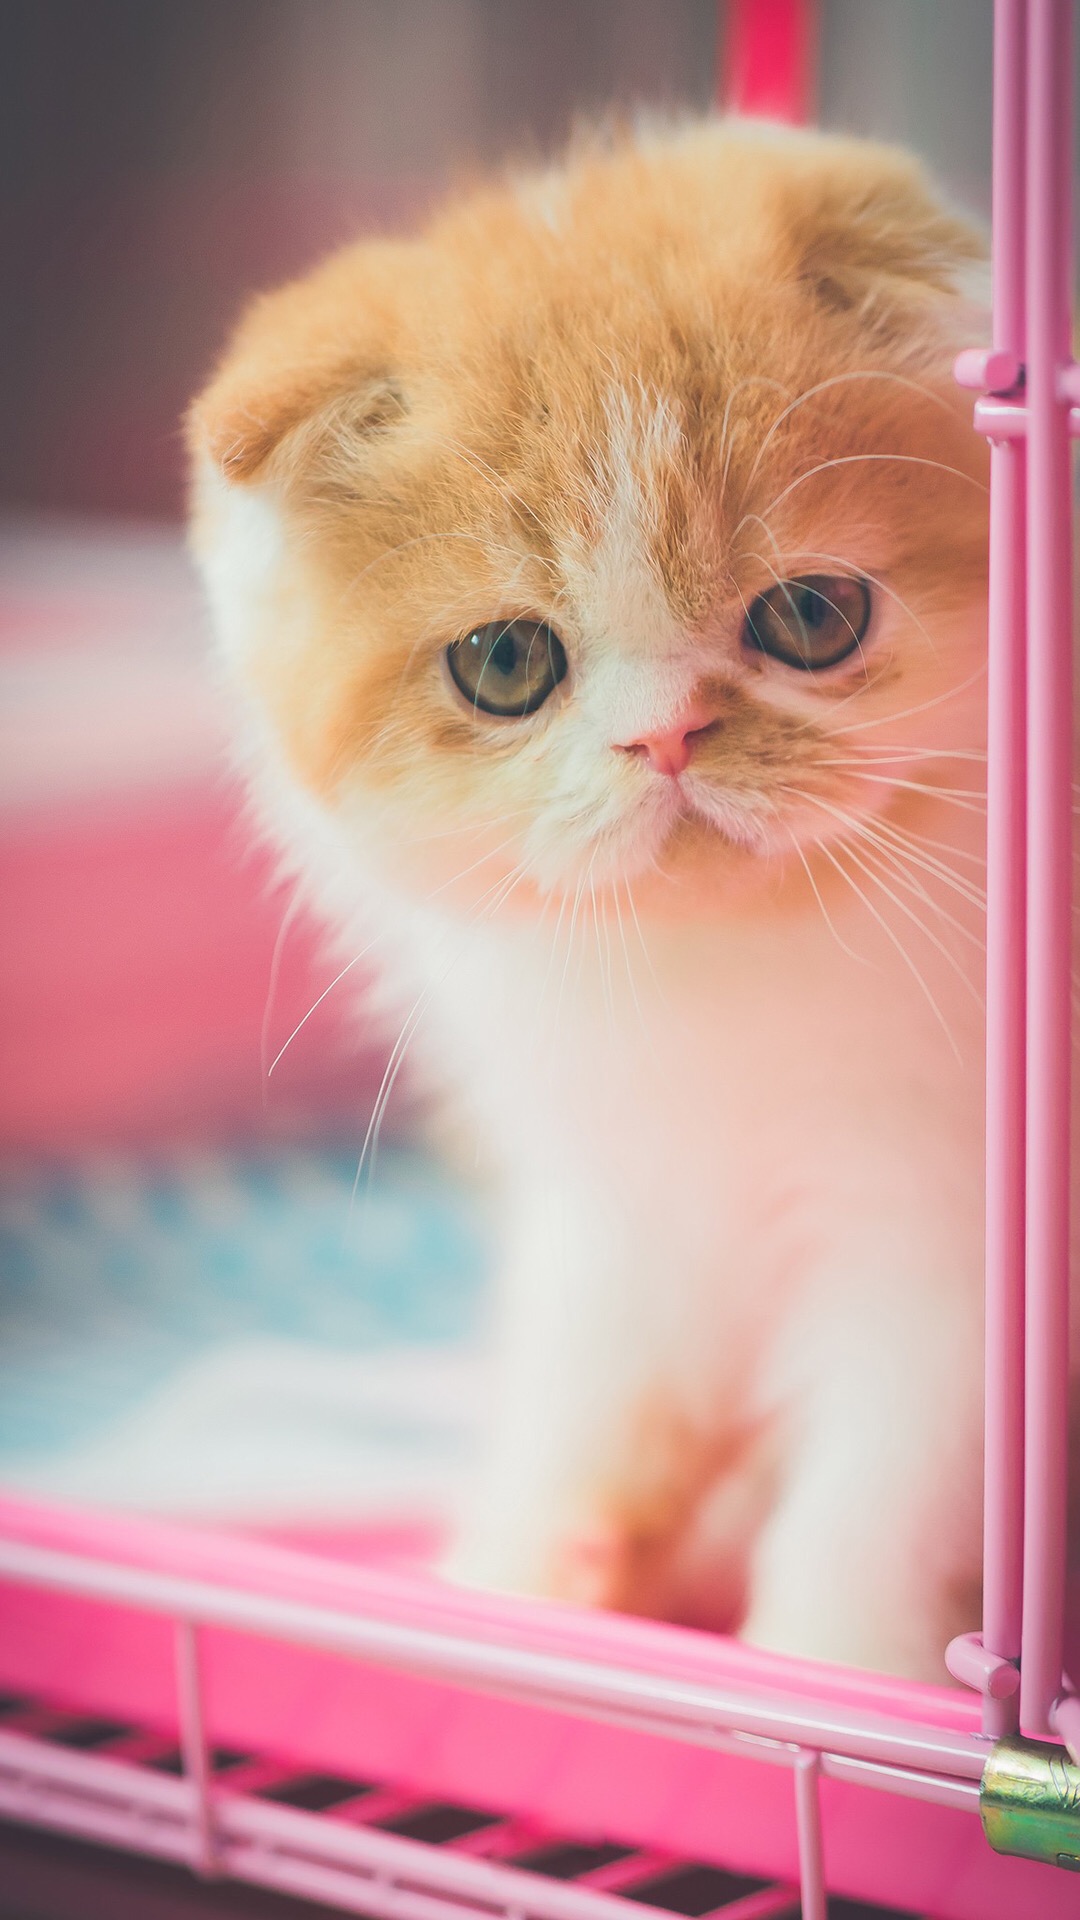 可爱喵星人卖萌图片 可爱的小猫咪高清手机壁纸(4)